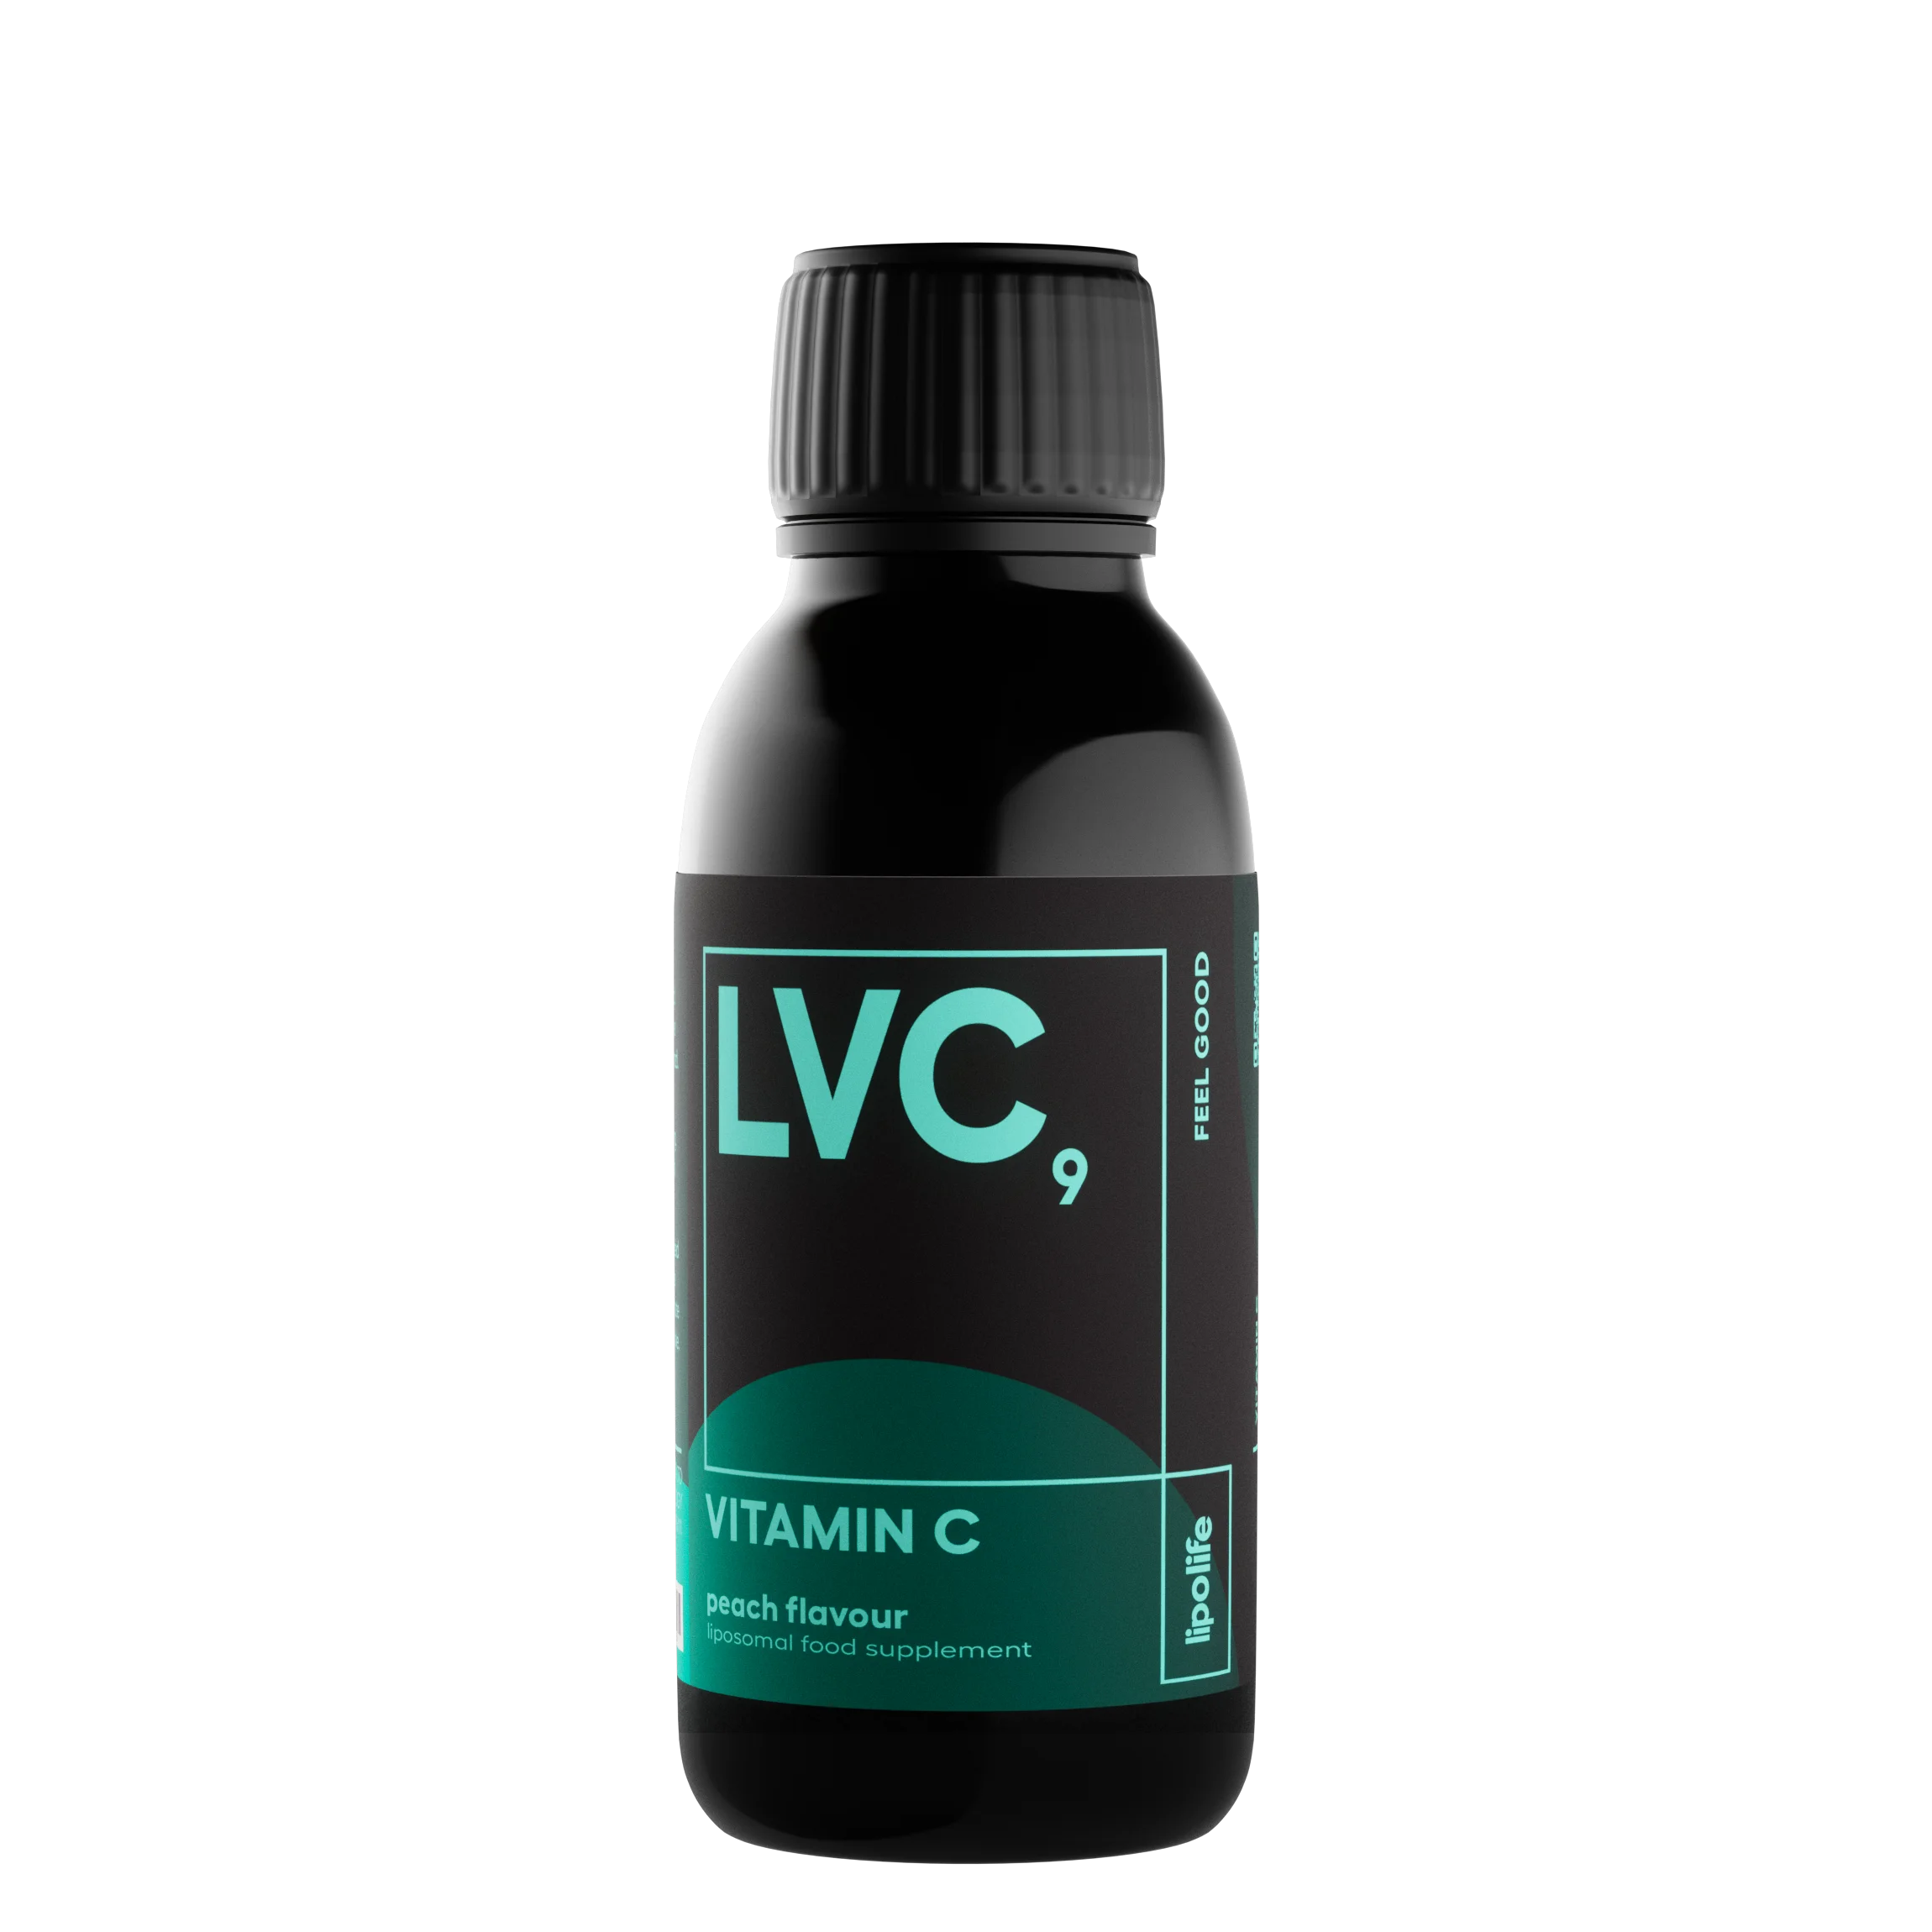 LVC9 - течен и липозомен витамин C - праскова, 150 мл.